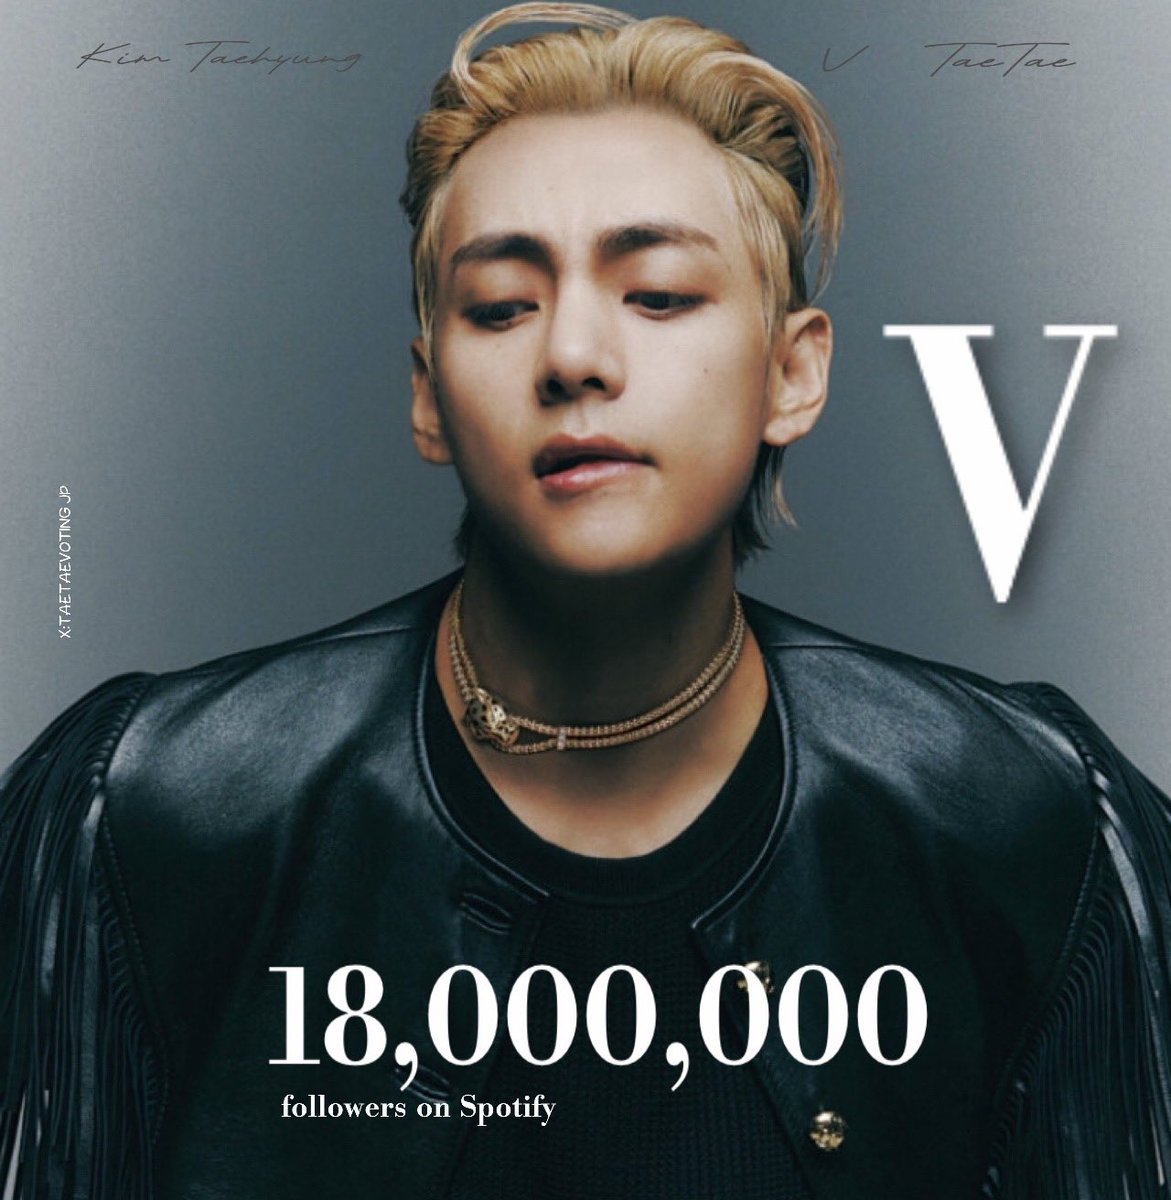 #V はSpotifyのフォロワー数が1,800万人を突破しました!! この記録を達成した初のK-POPソロアーティストとなりました。テテおめでとうございます

#TaehyungSpotify18M
18 MILLION FOR V
CONGRATULATIONS TAEHYUNG